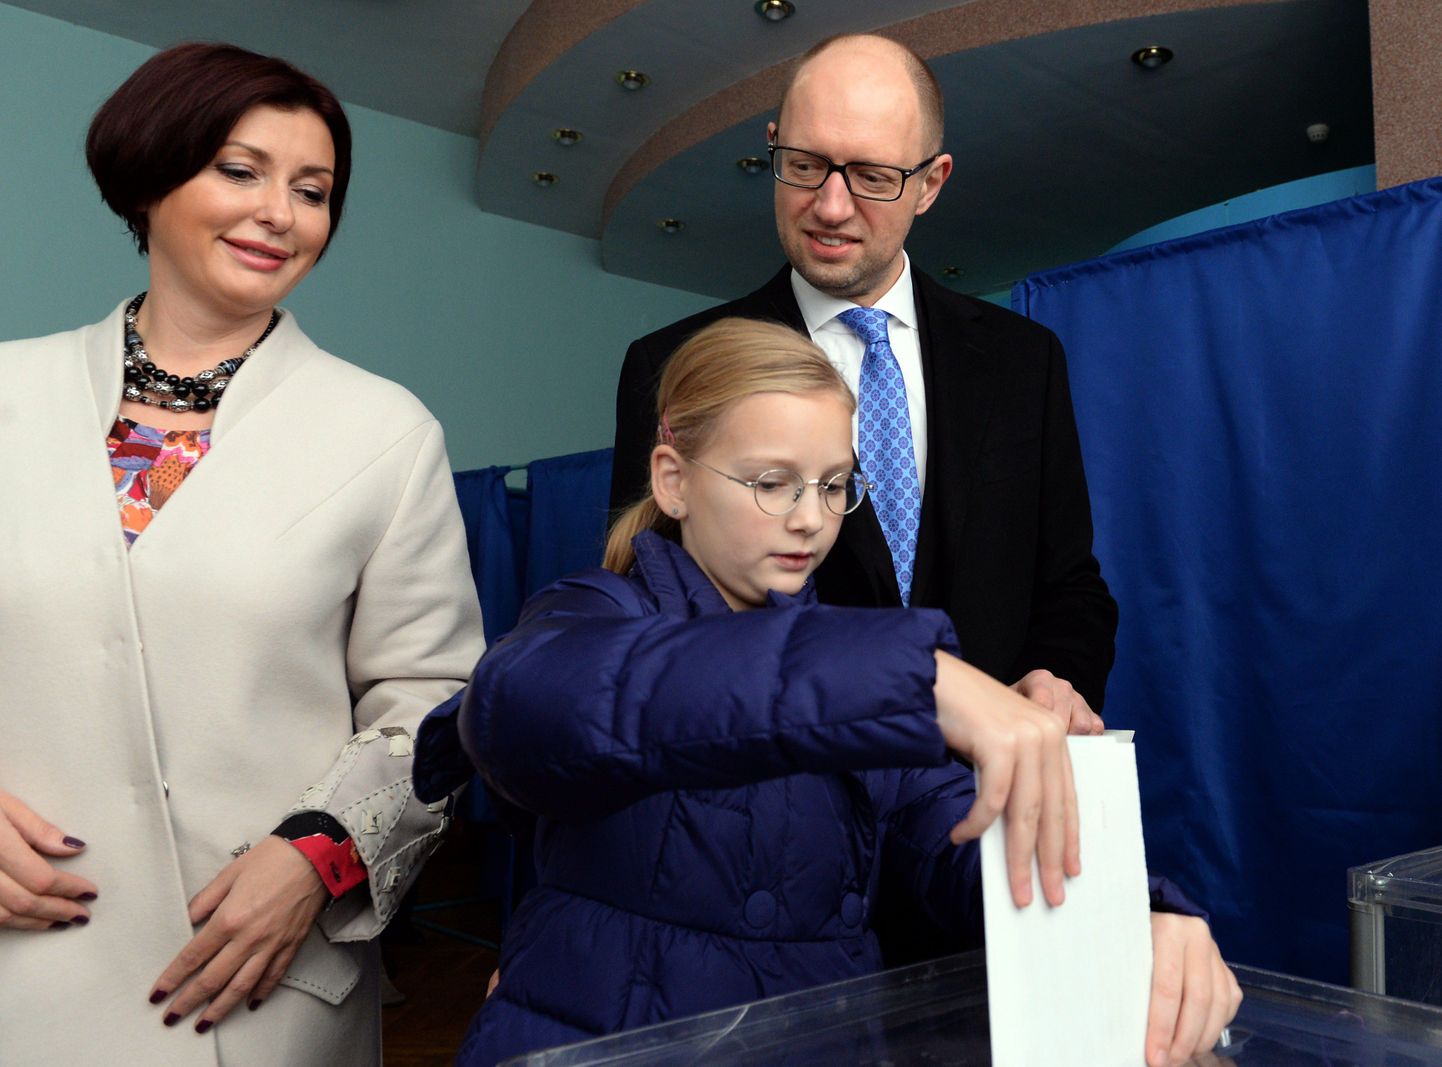 Ukraina peaminister Arseni Jatsenjuk käis 26. oktoobril valimas koos abikaasa Terezija ja tütar Sofijaga.